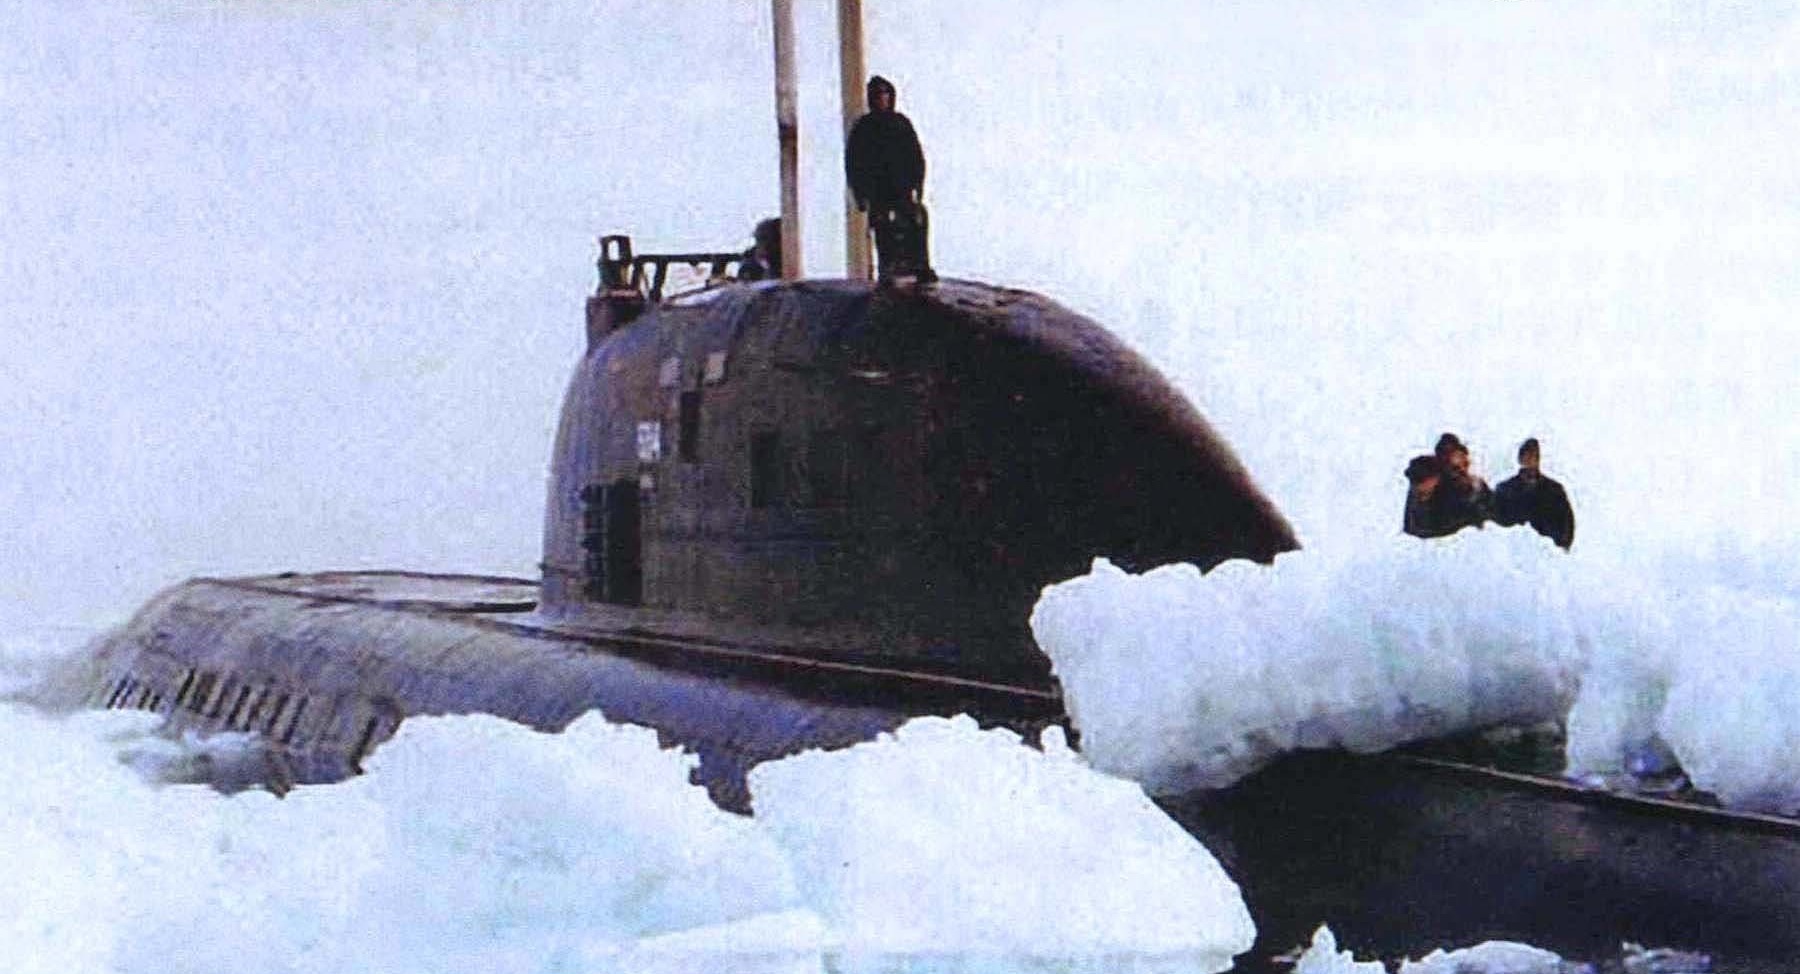 破冰浮出的671型攻擊核潛艇